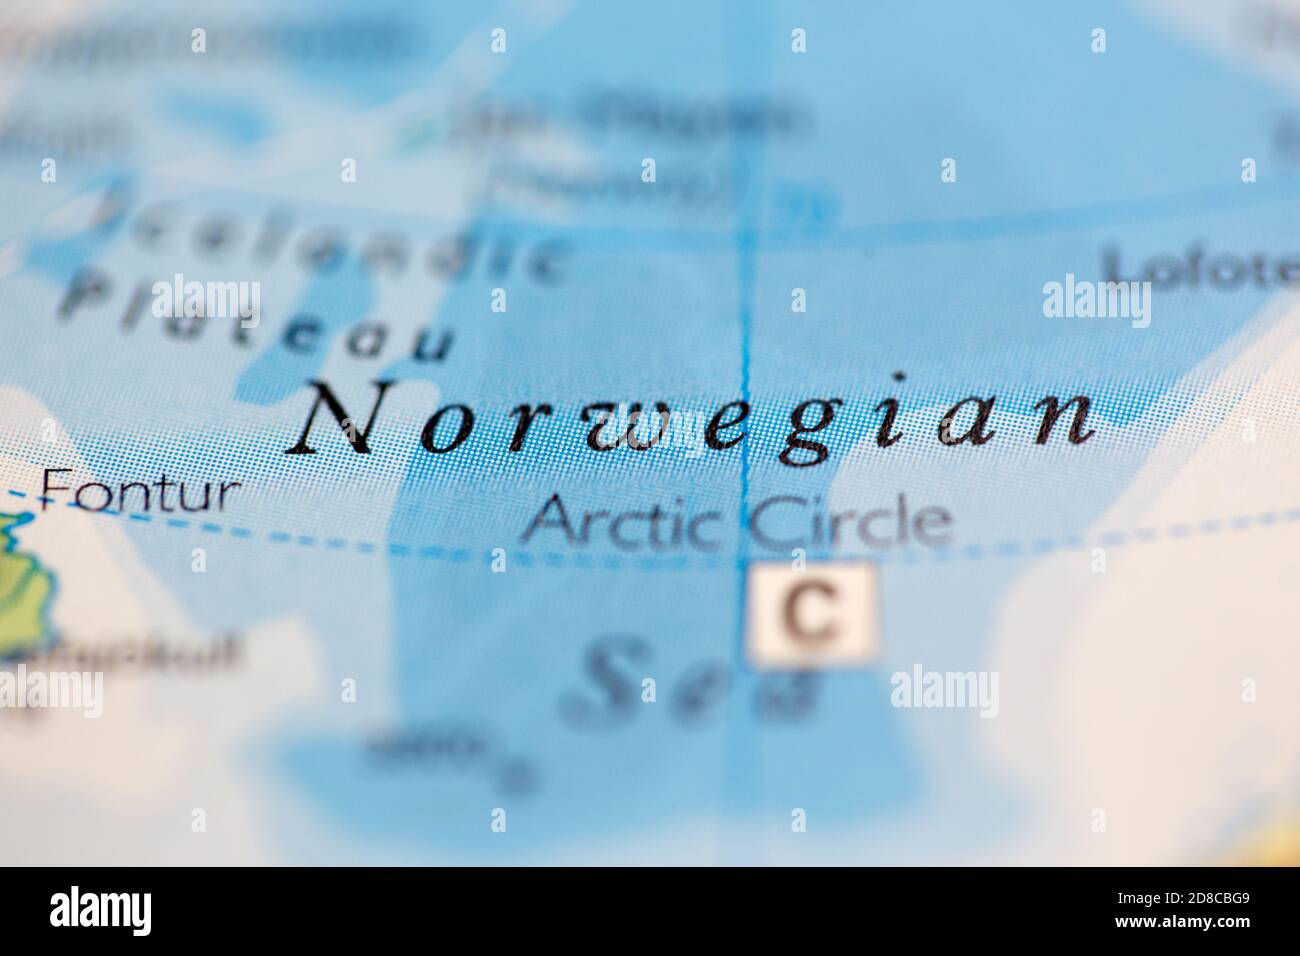 Profundidad de campo reducida se centra en la ubicación del mapa geográfico de Mar de Noruega frente a la costa de Noruega en atlas Foto de stock